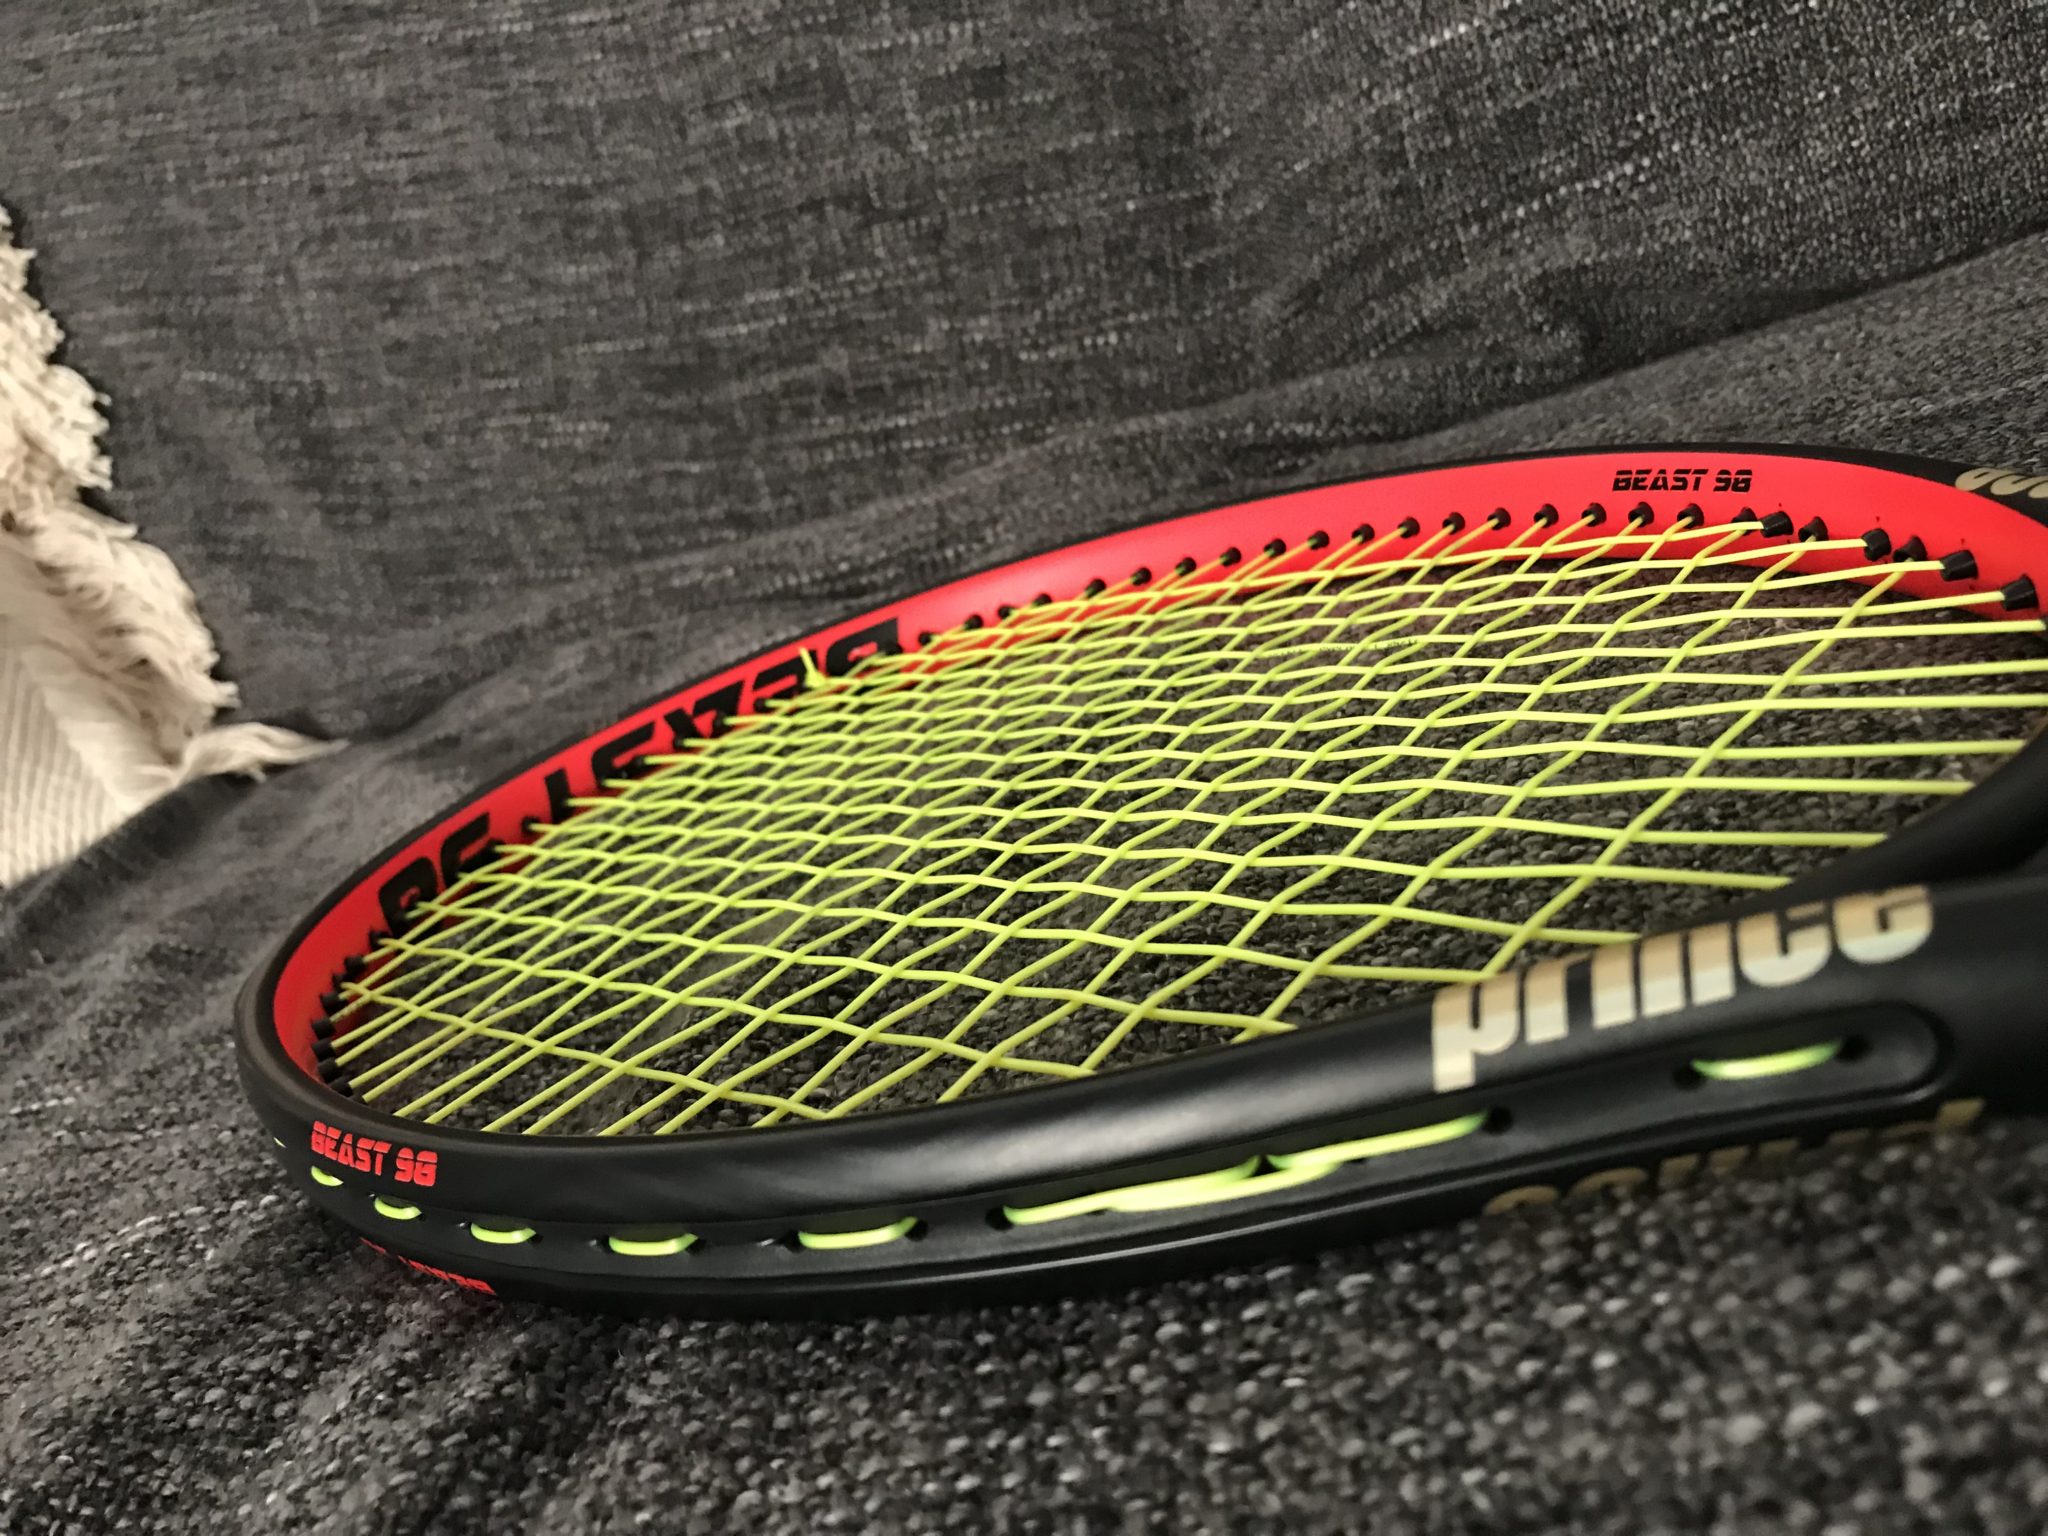 Typisch Wiskundige Sanders Prince Beast 98 Racquet Review - Tennisnerd Racquet Reviews